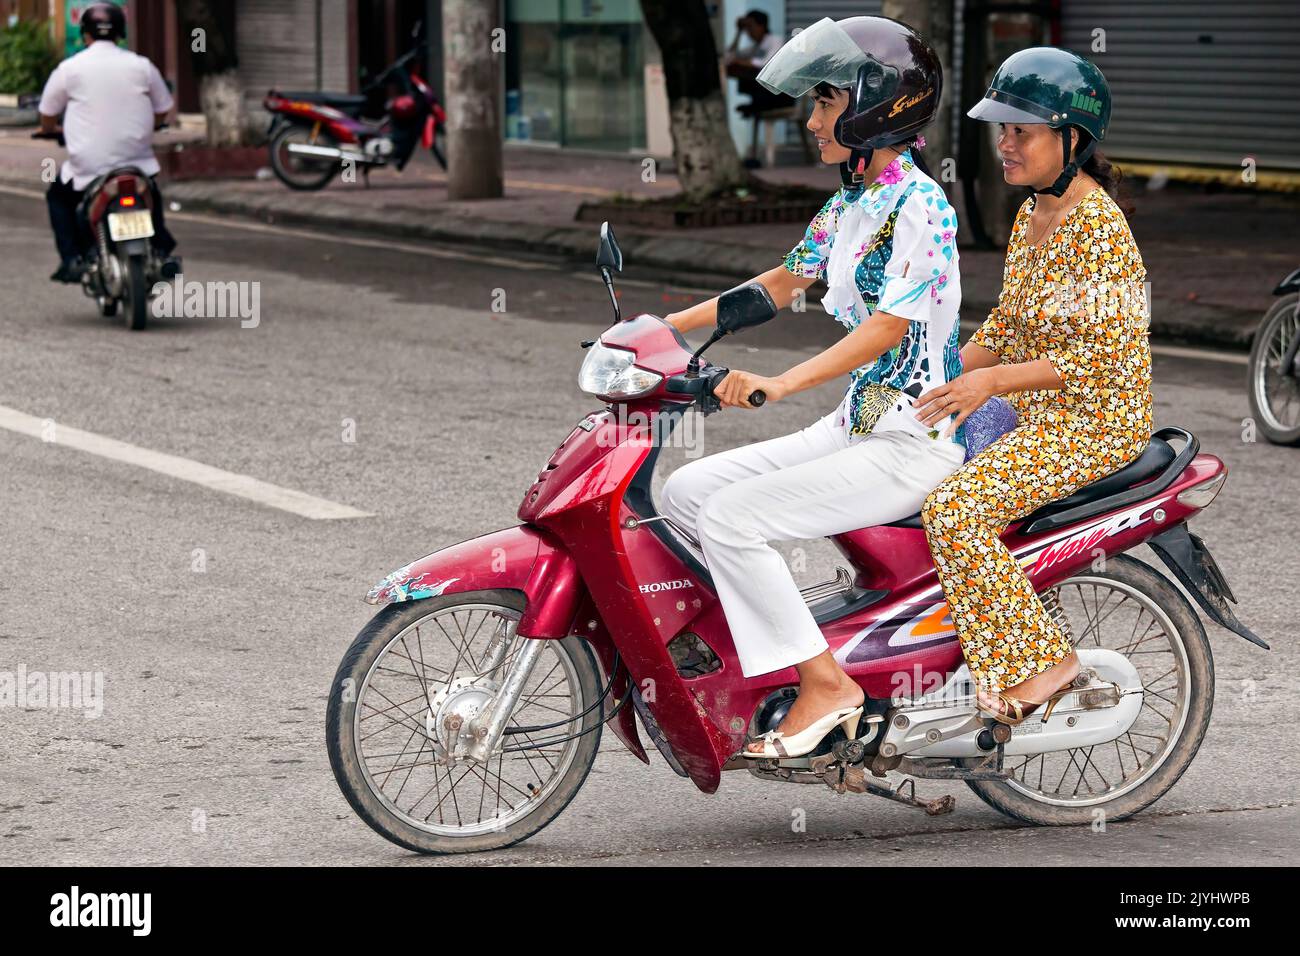 Motorbike in traffic, Hai Phong, Vietnam Stock Photo